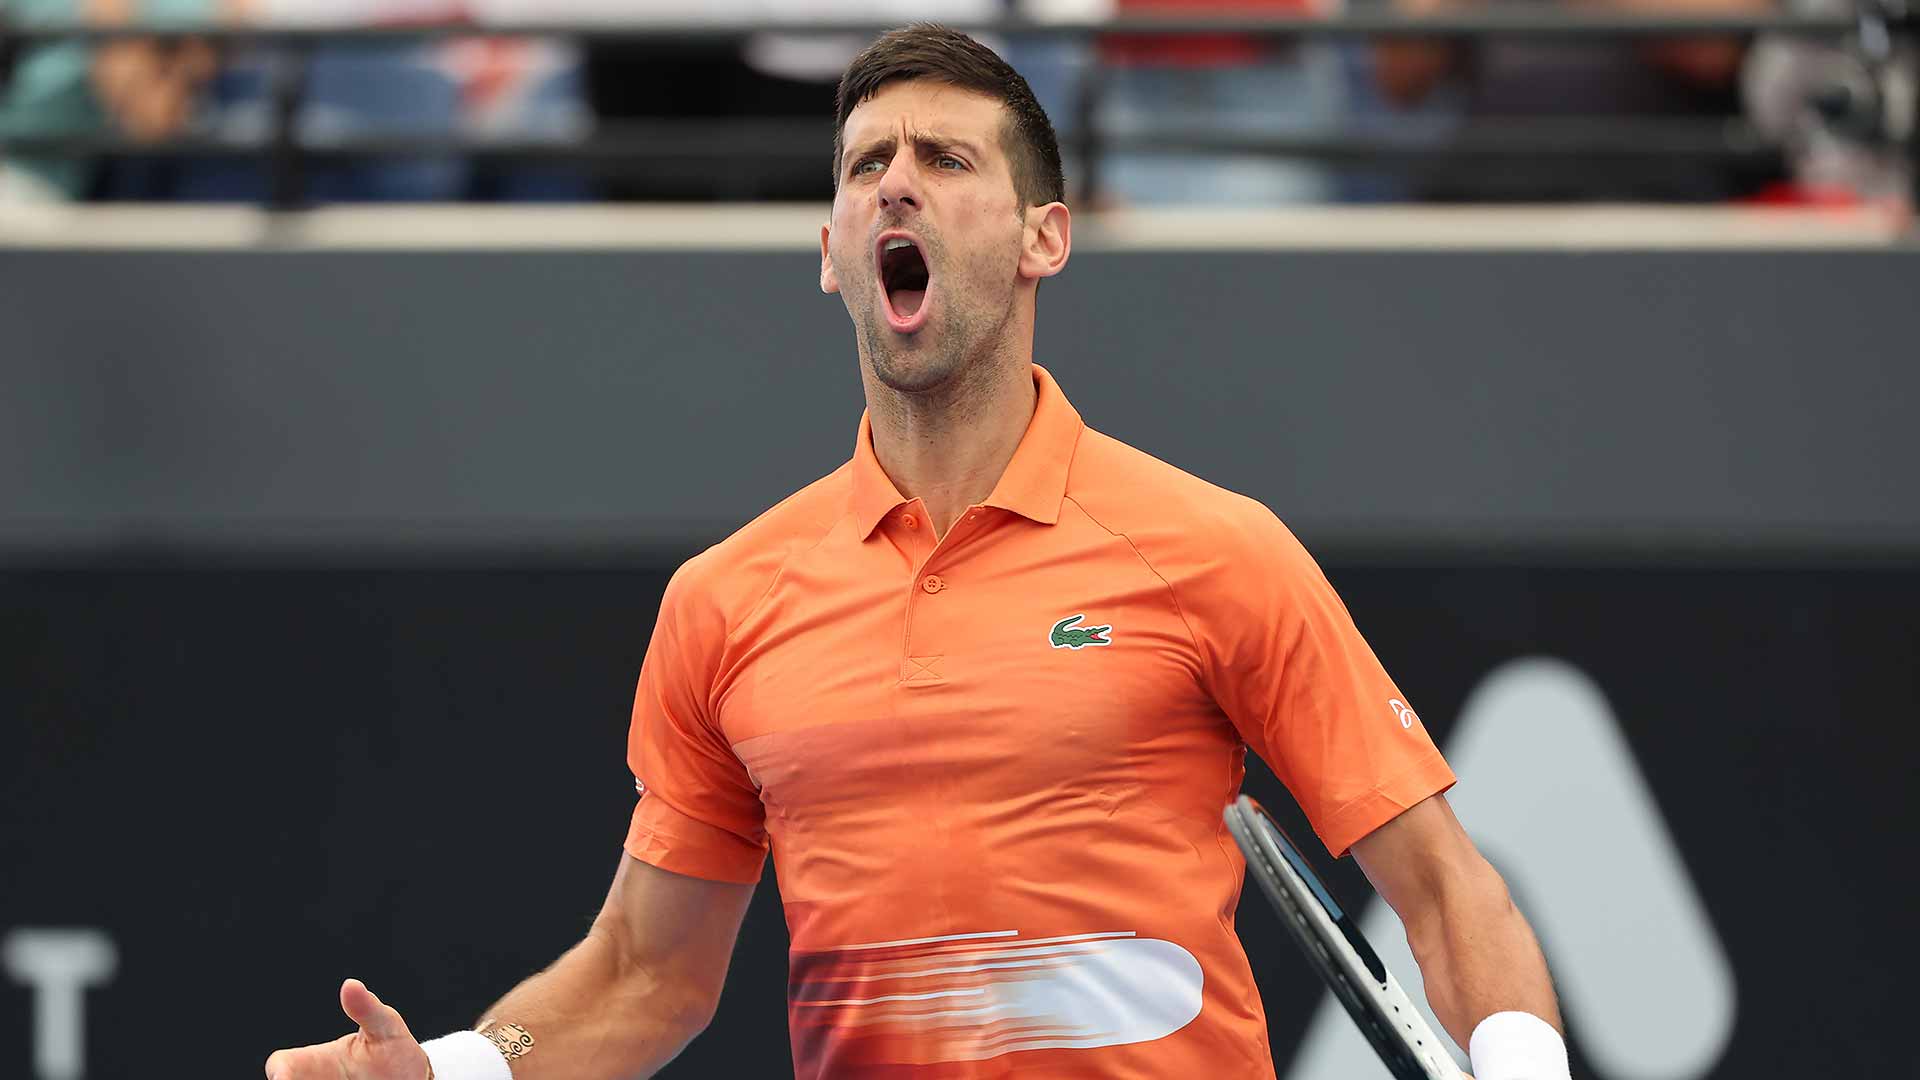 Novak Djokovic in full voice at Adelaide International 1 on Thursday.